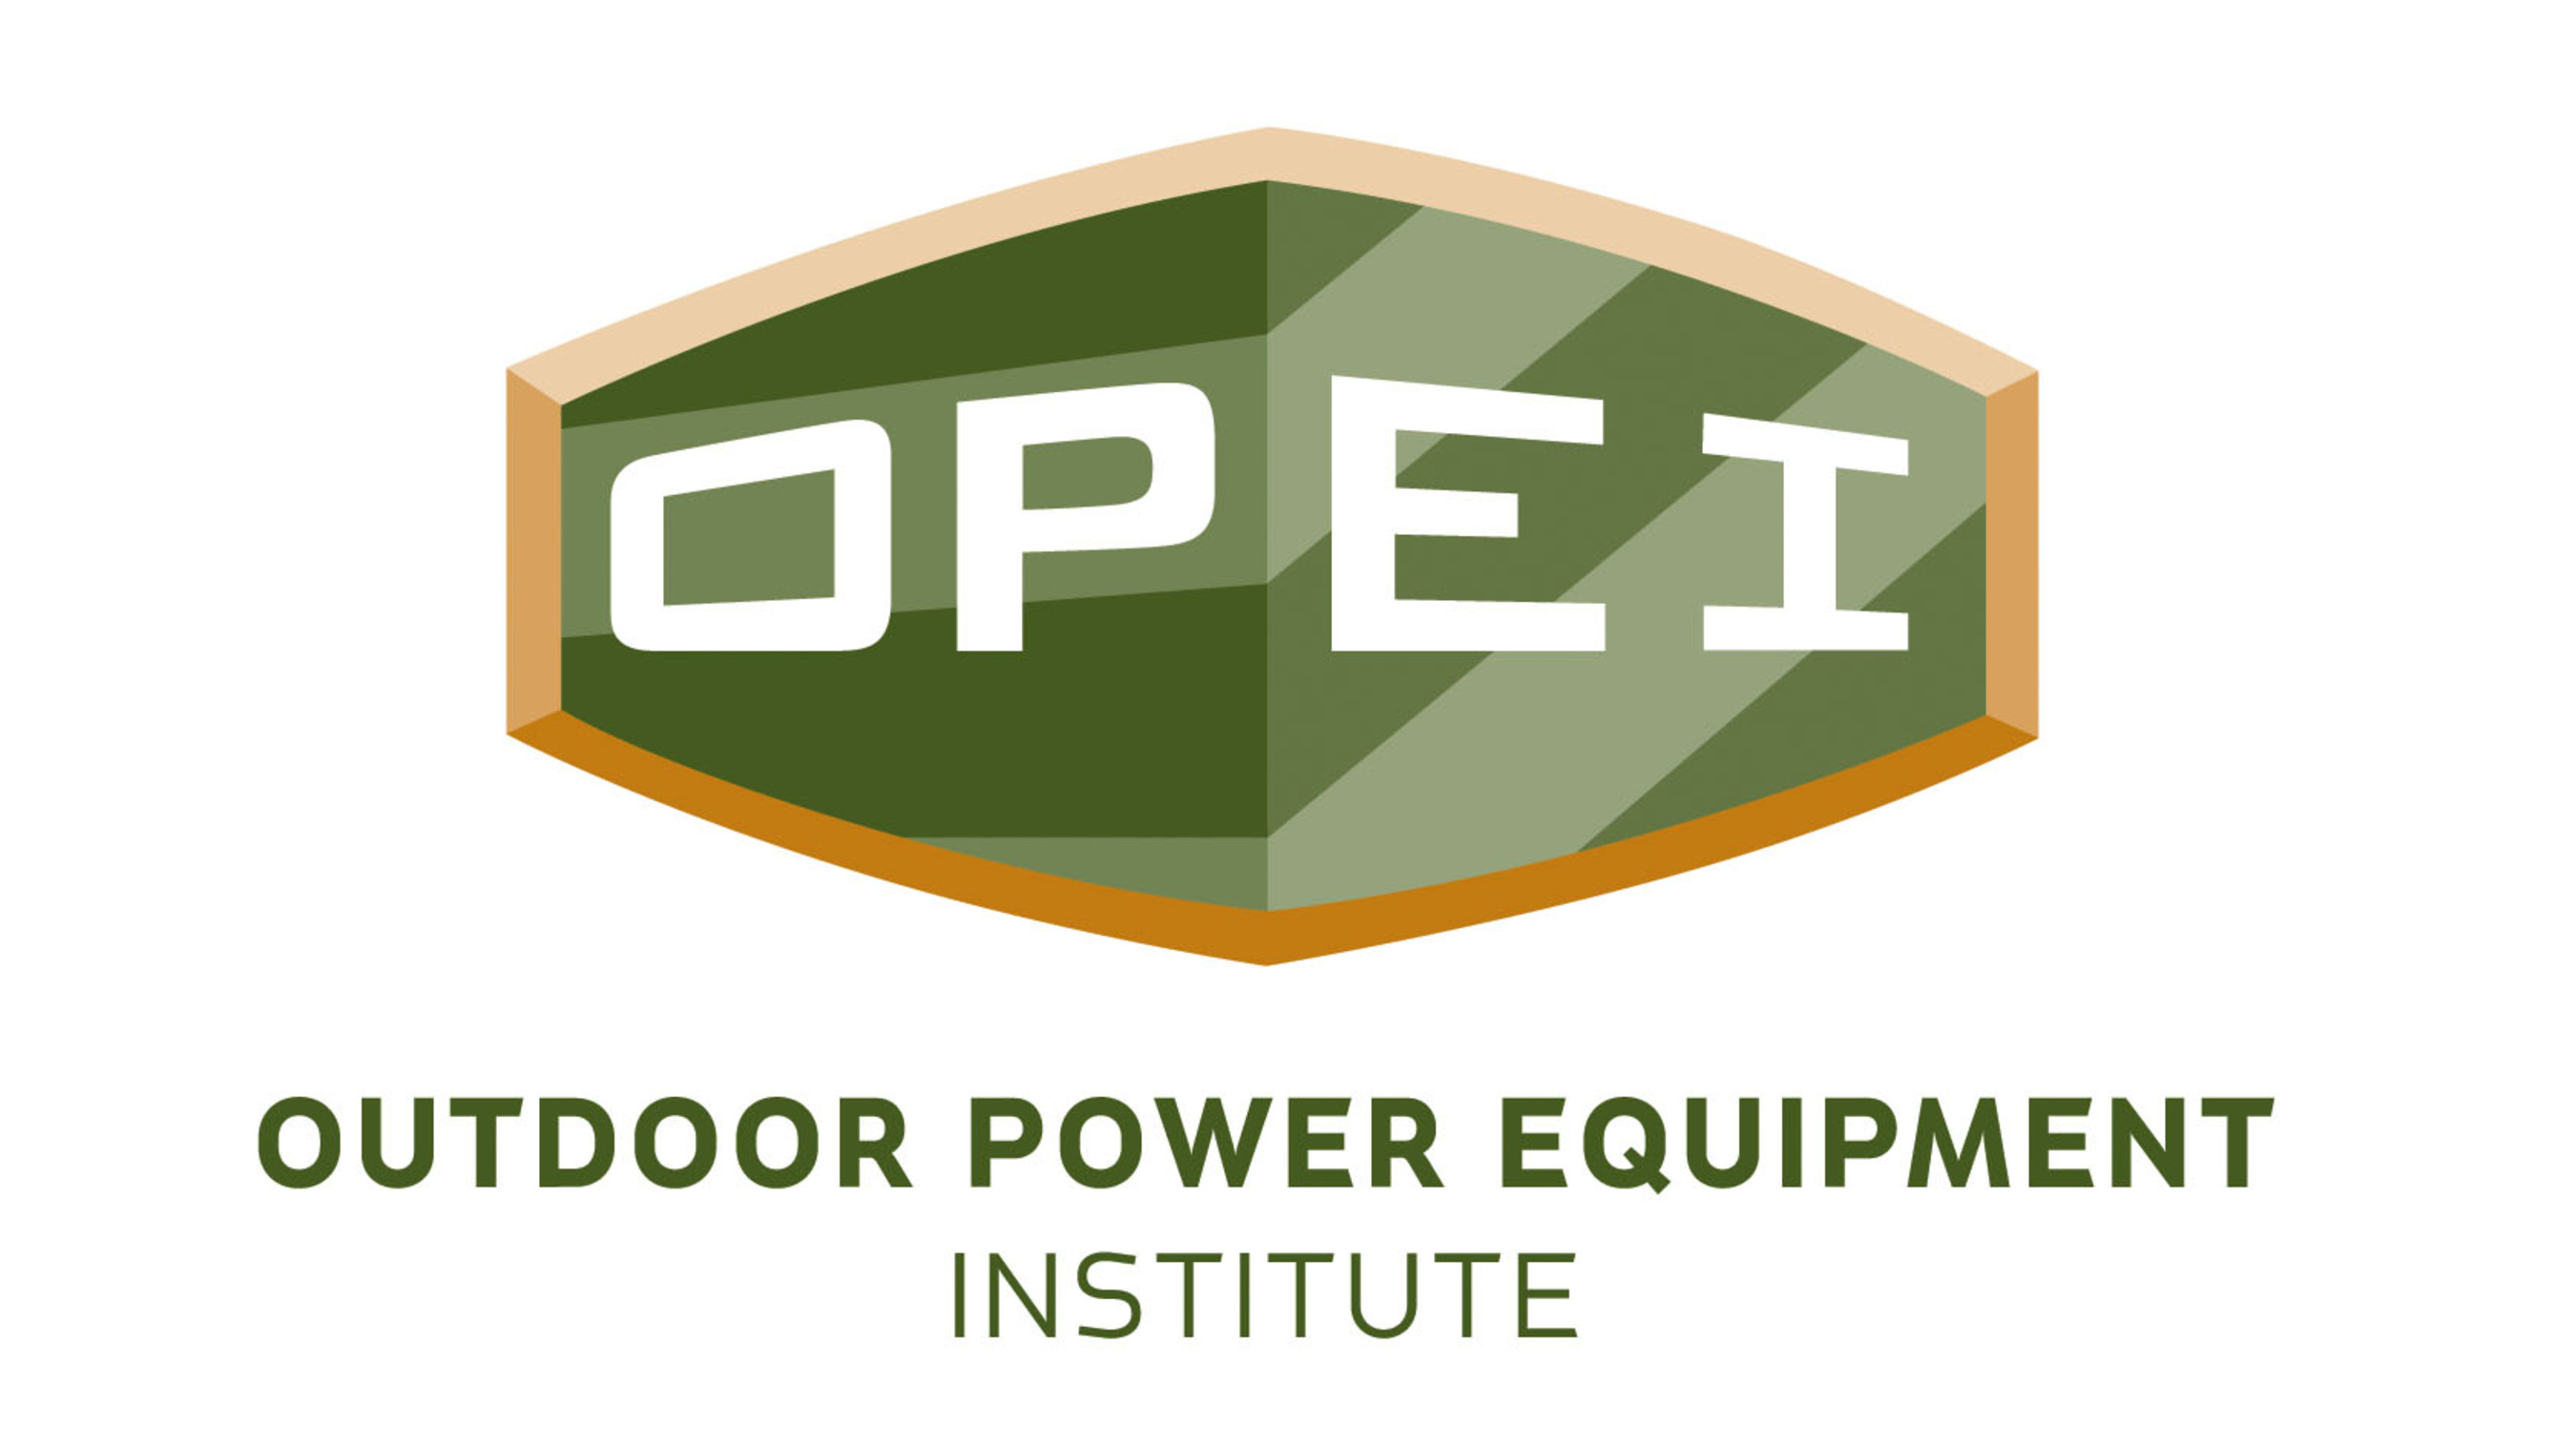 Outdoor Power Equipment Institute (OPEI) logo